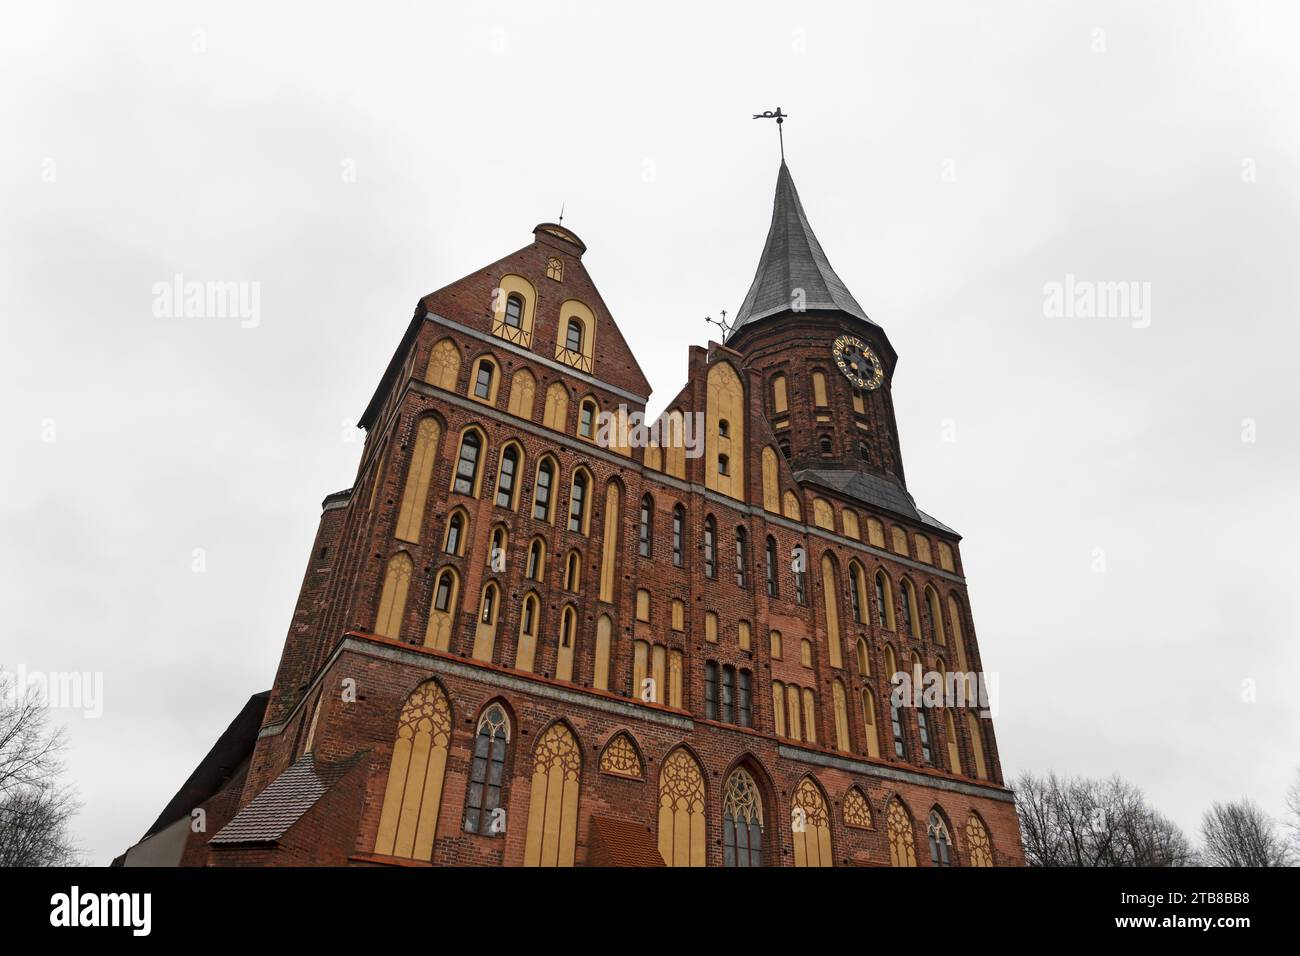 Kathedrale in der Kathedrale von Kininingrad, kenigsberg. Das Hotel liegt im historischen Viertel der Stadt Kaliningrad - Kneipof jetzt im Volksmund Kant I bezeichnet Stockfoto